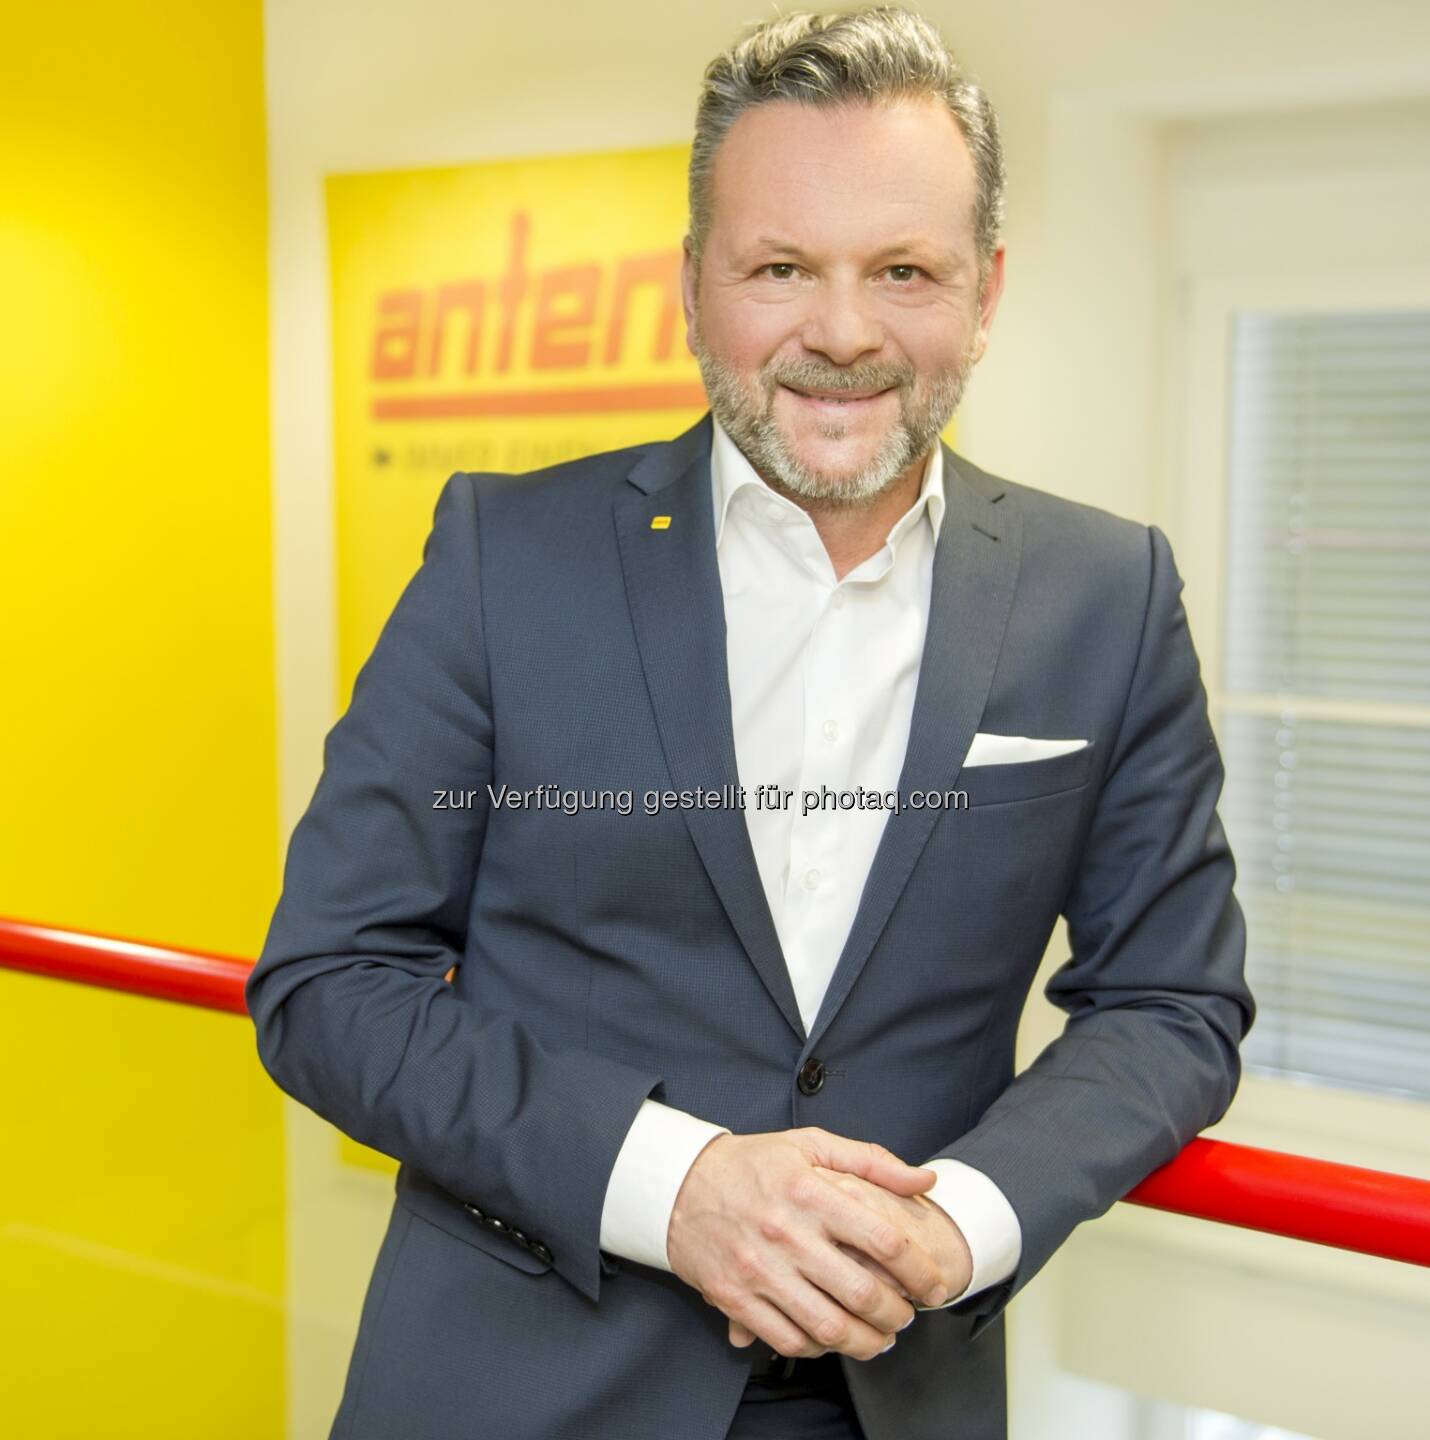 Antenne Geschäftsführer Gottfried Bichler - Antenne Steiermark: Antenne ist das Regionalradio Nr. 1 in Kärnten (Fotocredit: Antenne)